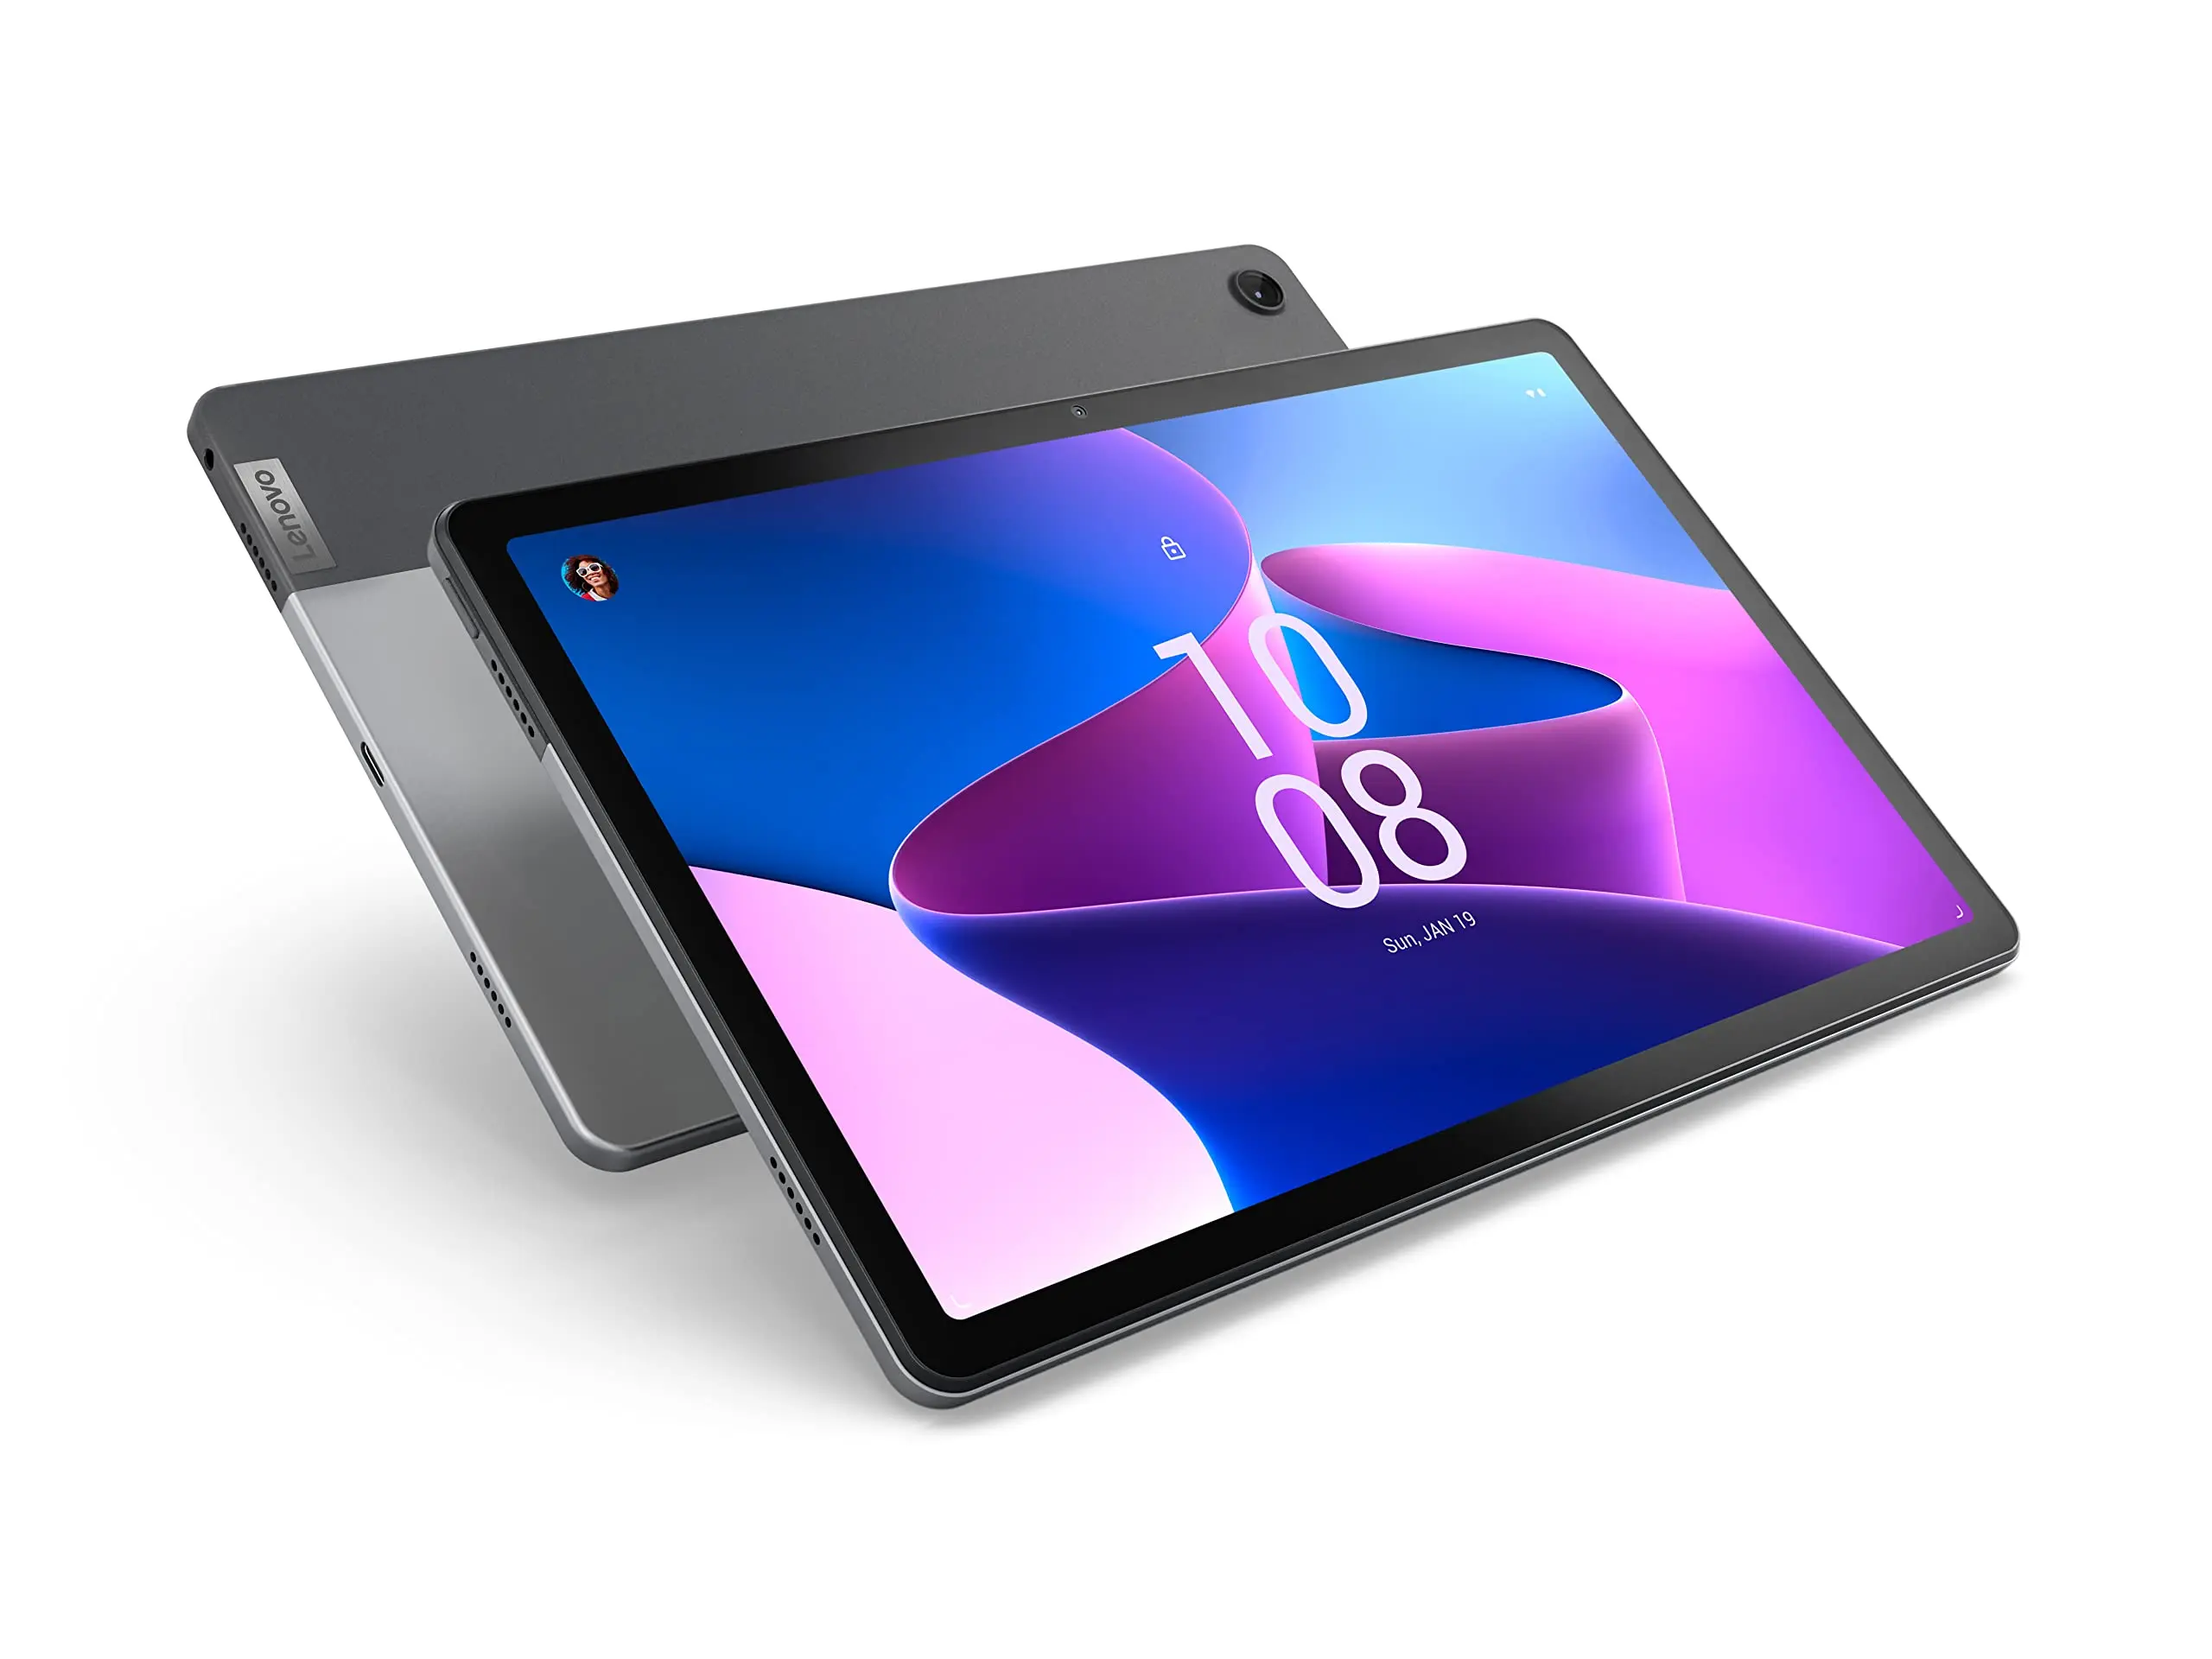 precio pantalla tablet lenovo - Qué tan recomendable es la tablet Lenovo